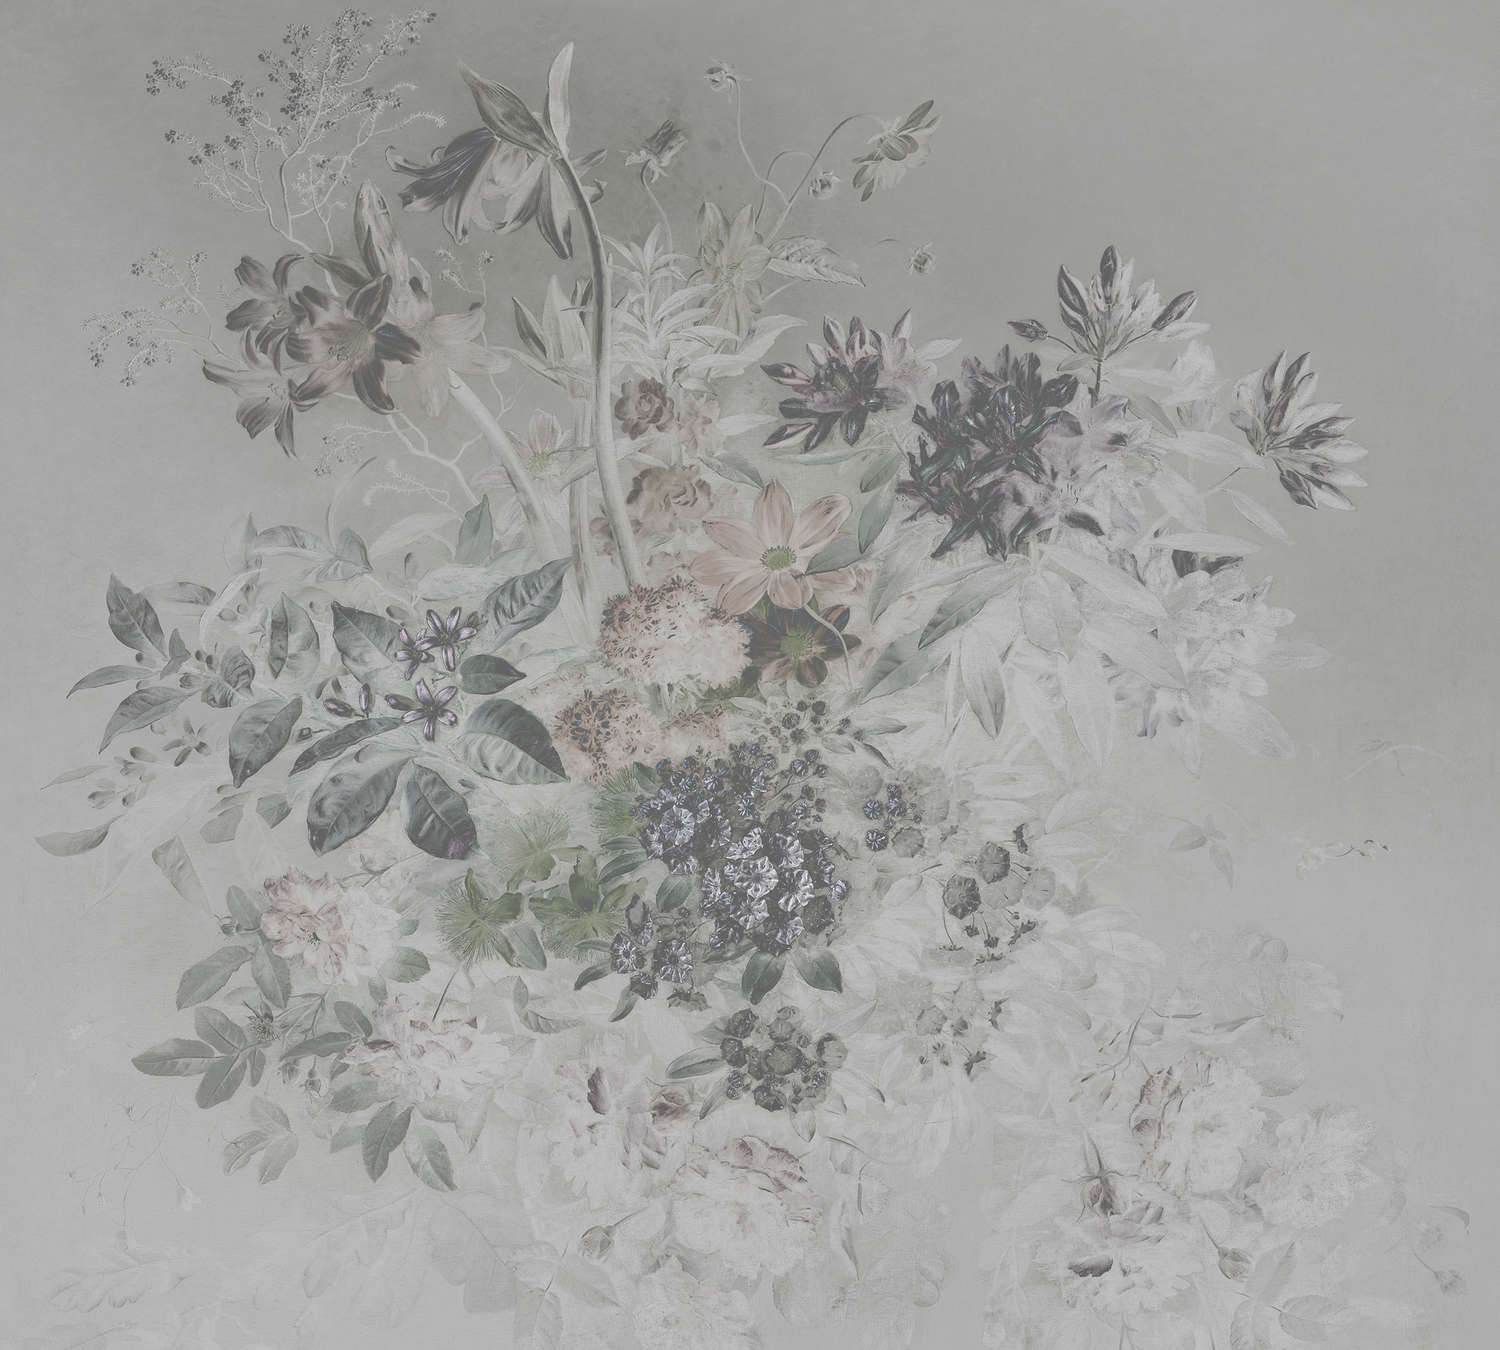             Muurschildering romantisch bloemmotief - grijs, wit
        